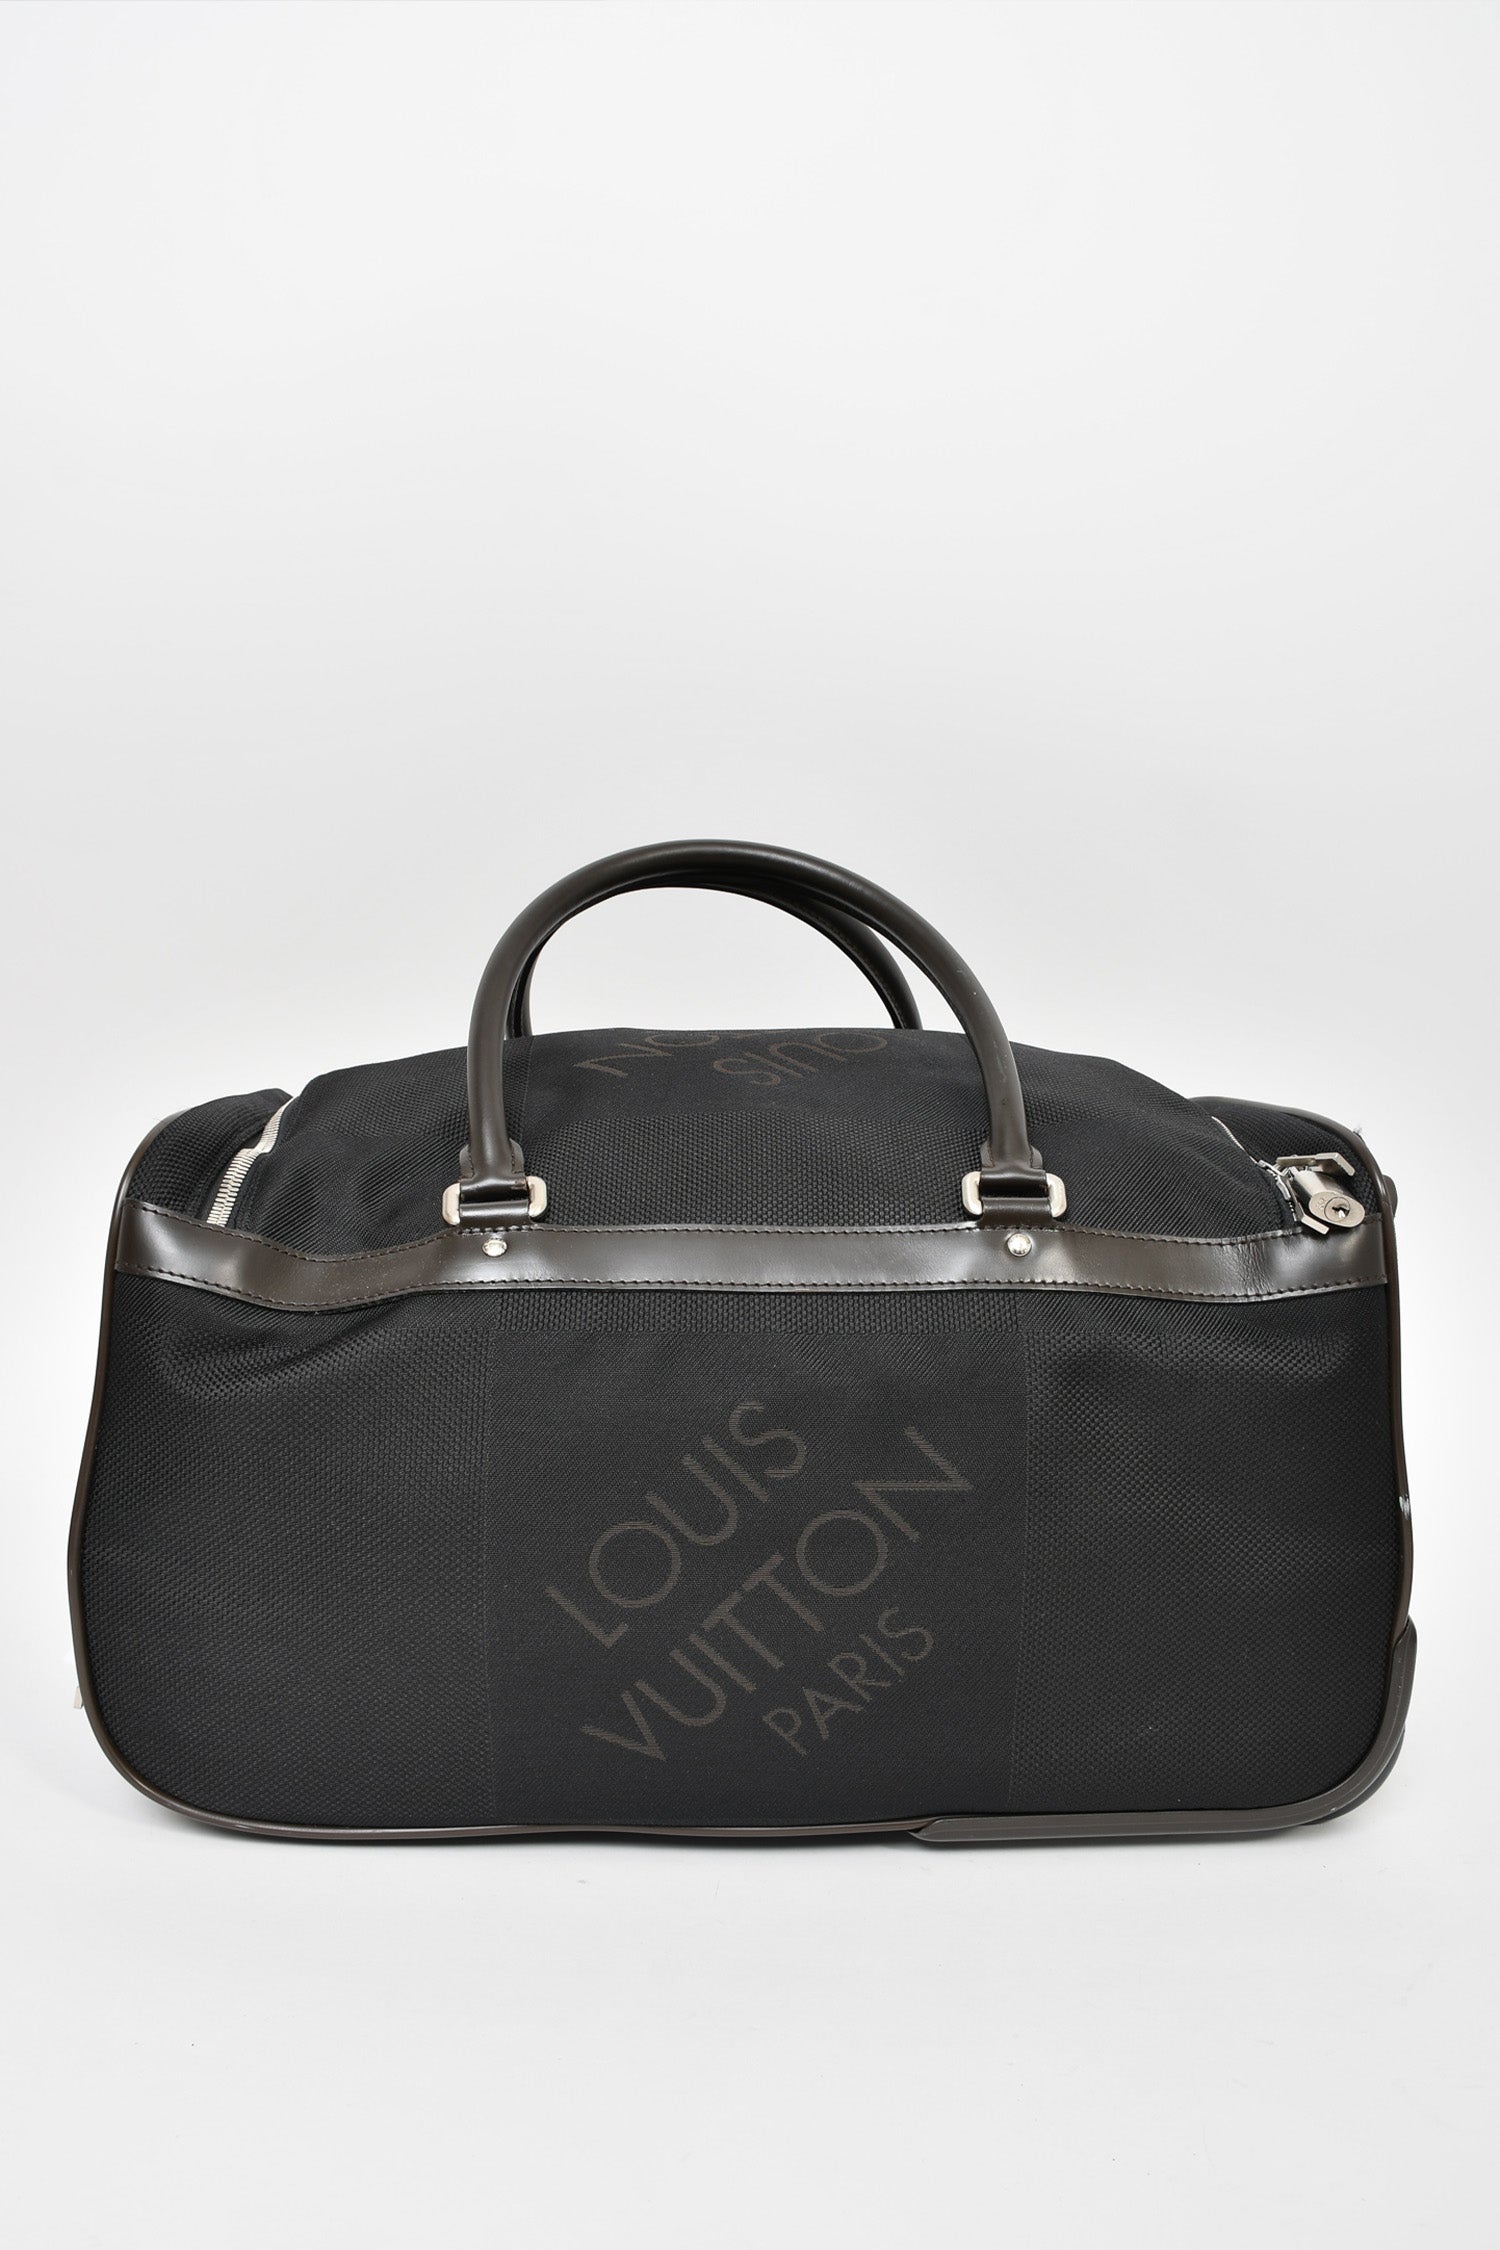 louis vuitton 2011 handbag collection